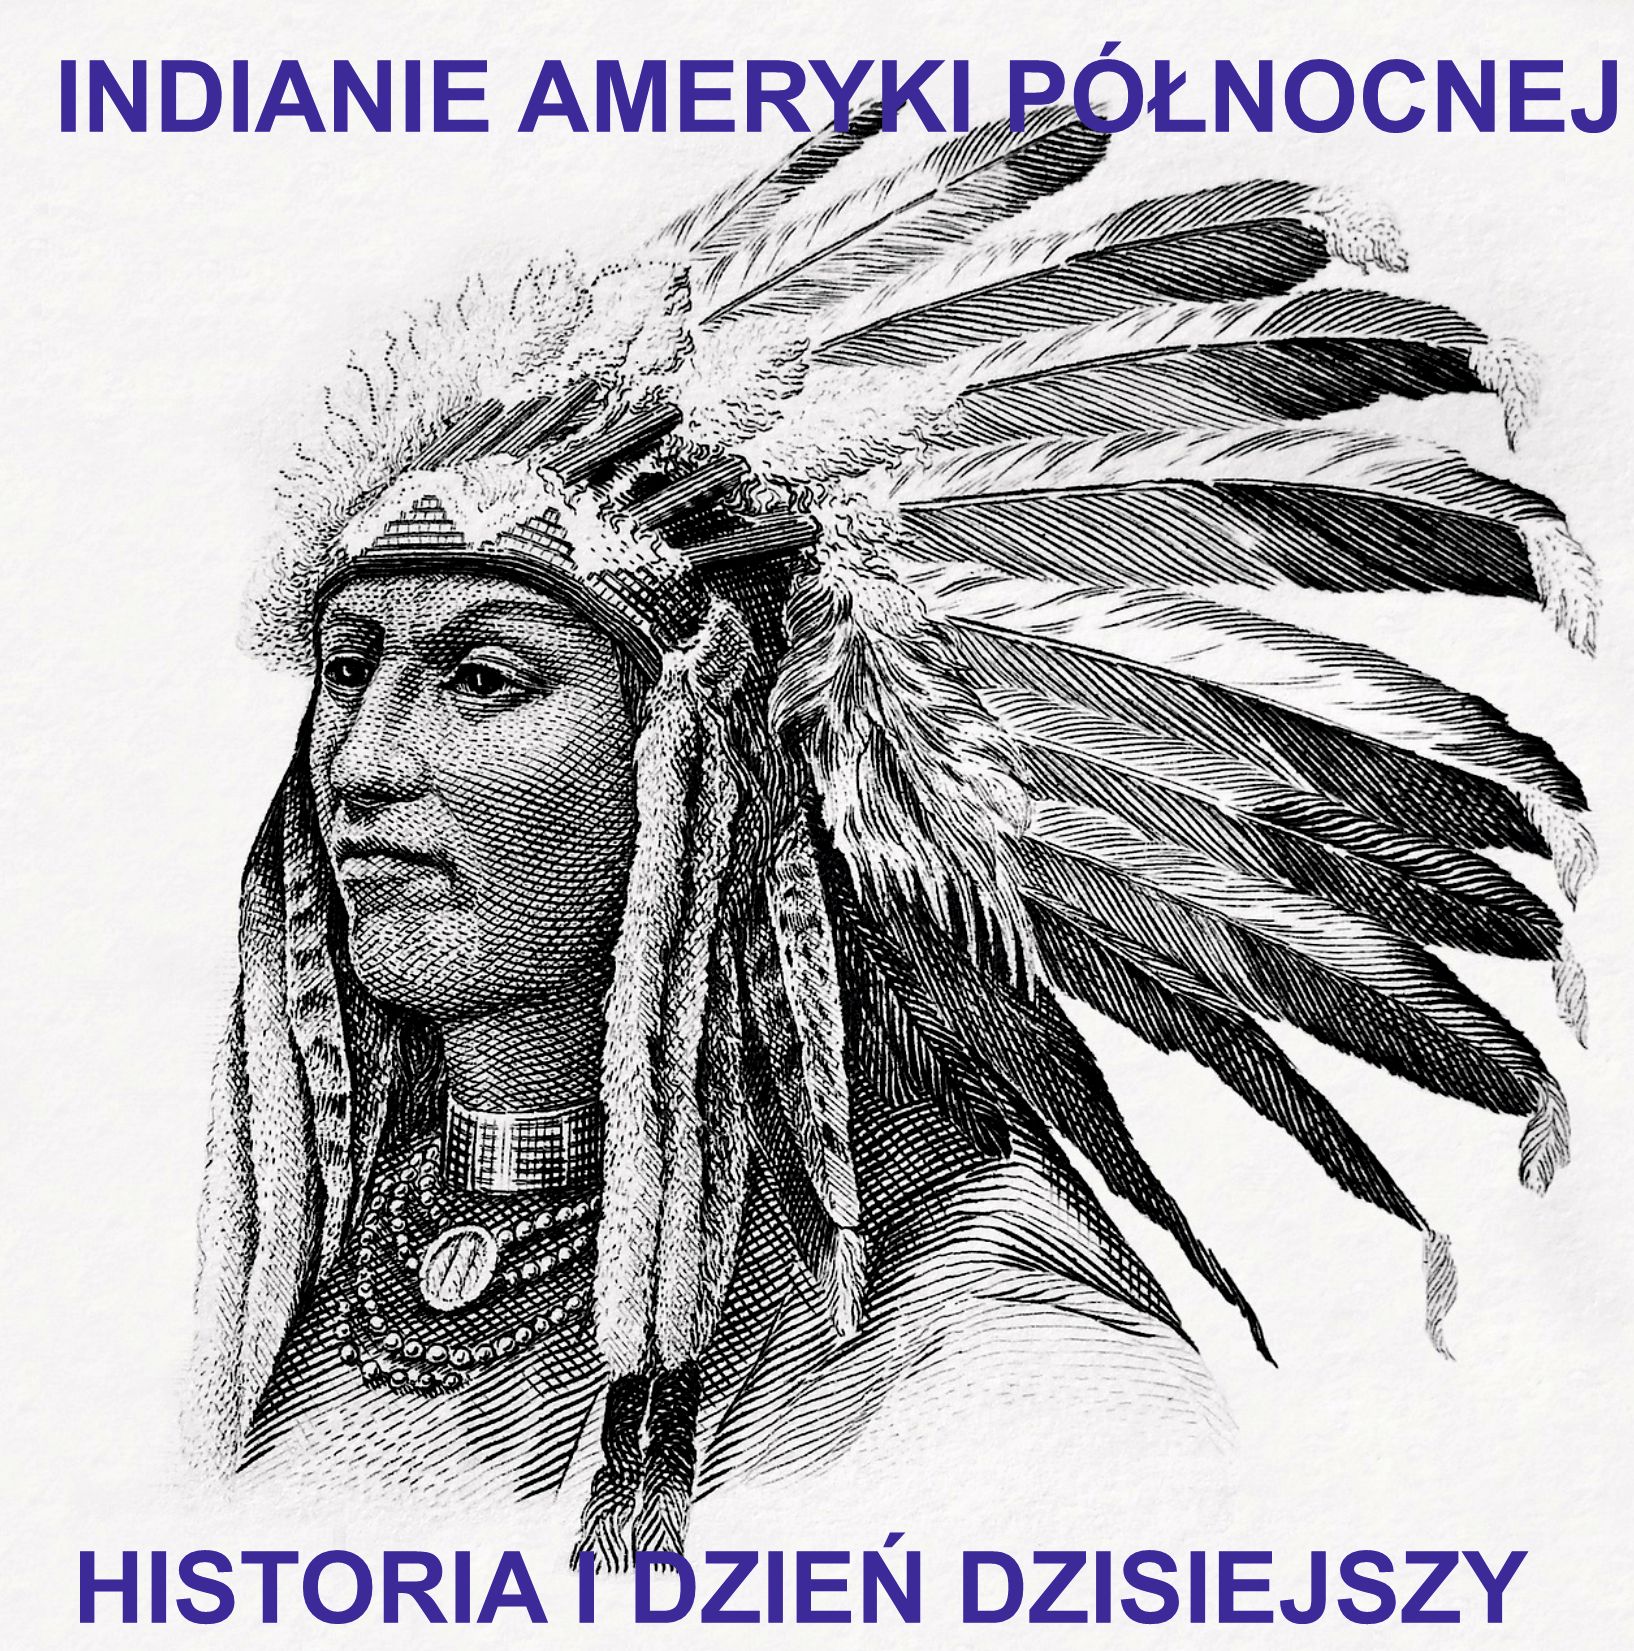 Indianie Ameryki Północnej - październik